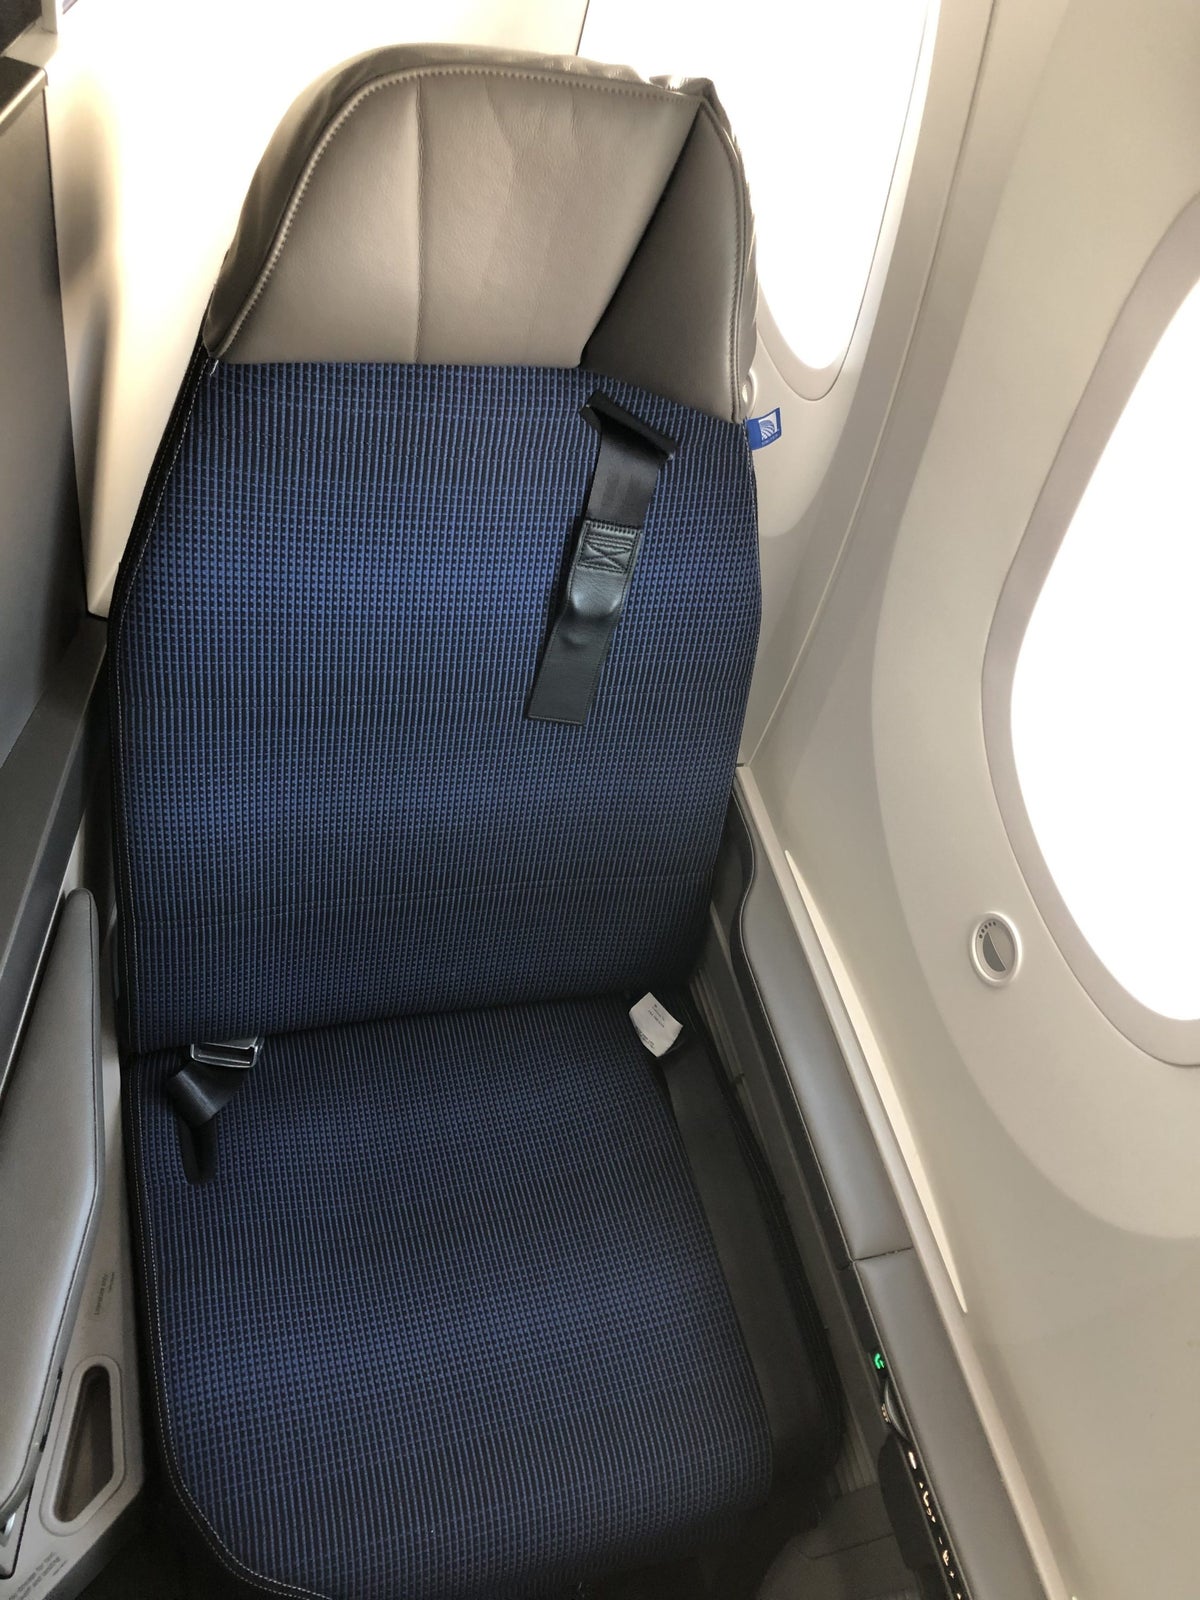 United Polaris 787-10 seat 2